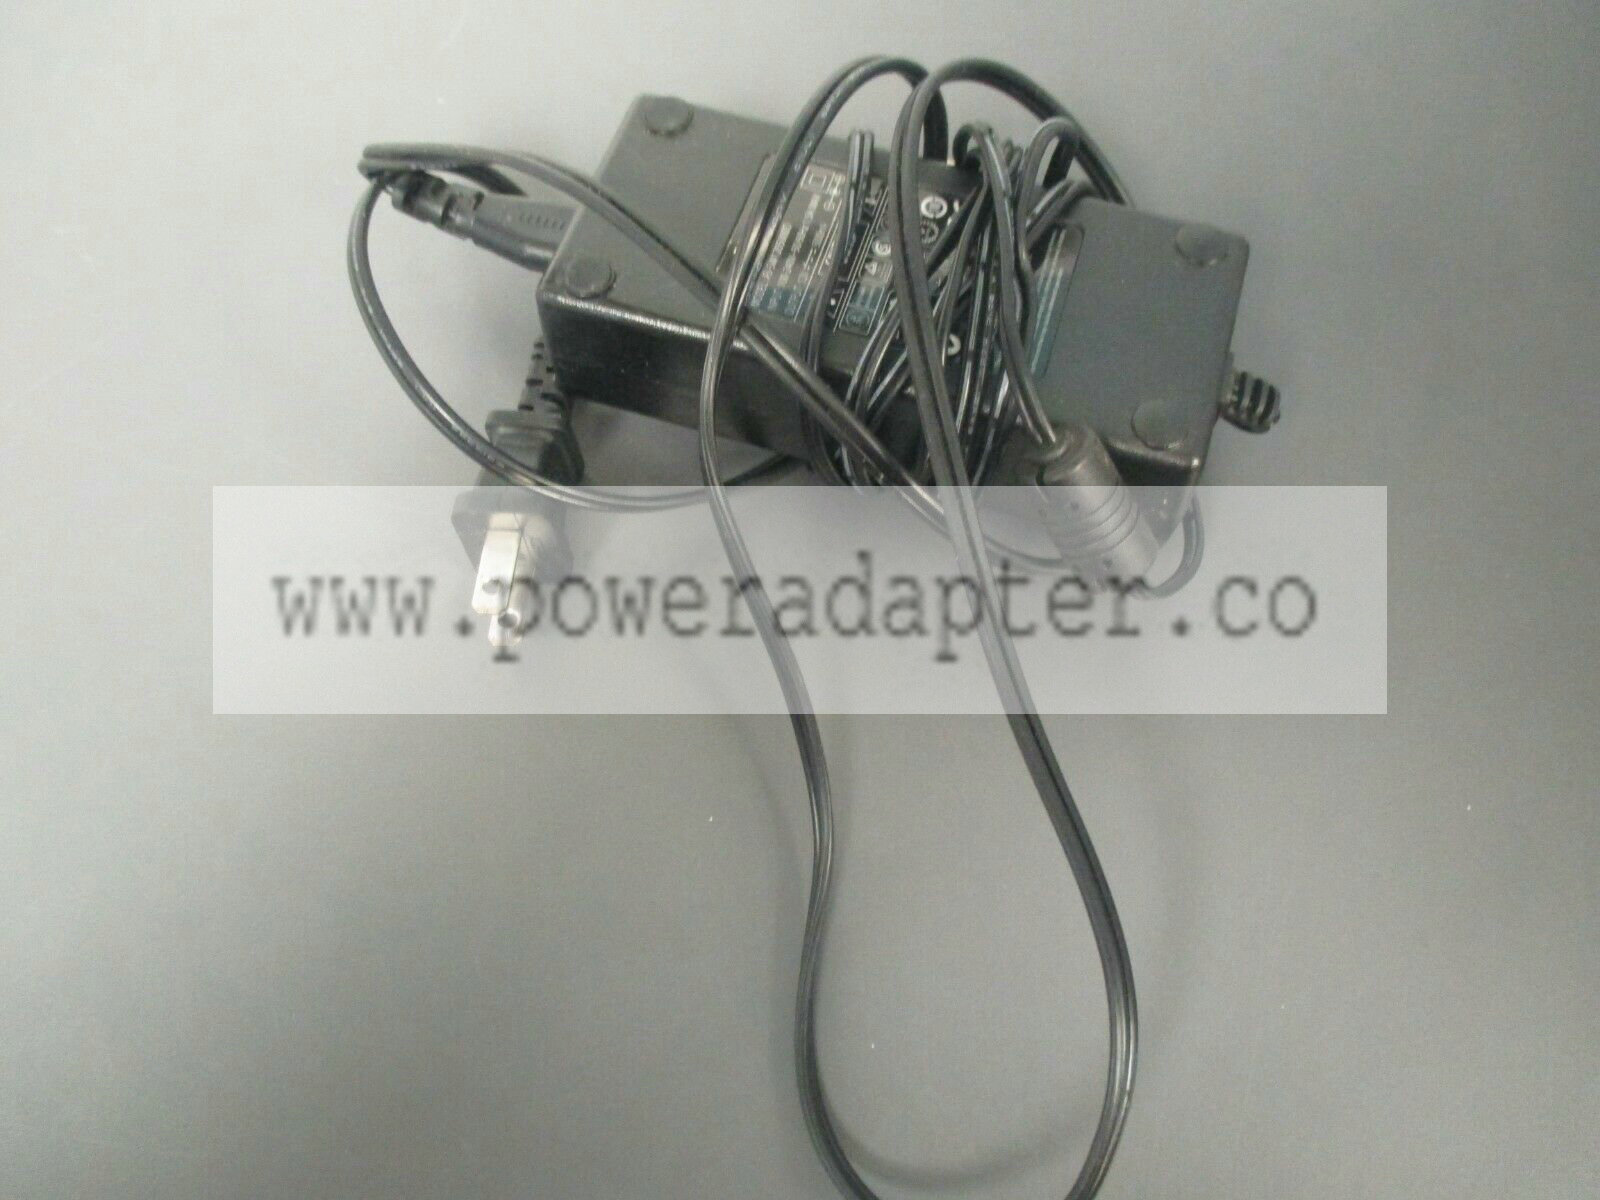 Power Adapter FJ-SW1205000D model:FJ-SW1205000D input:100-240v 50-60hz output:12v 5000ma Power Adapter FJ-SW1205000D - Click Image to Close